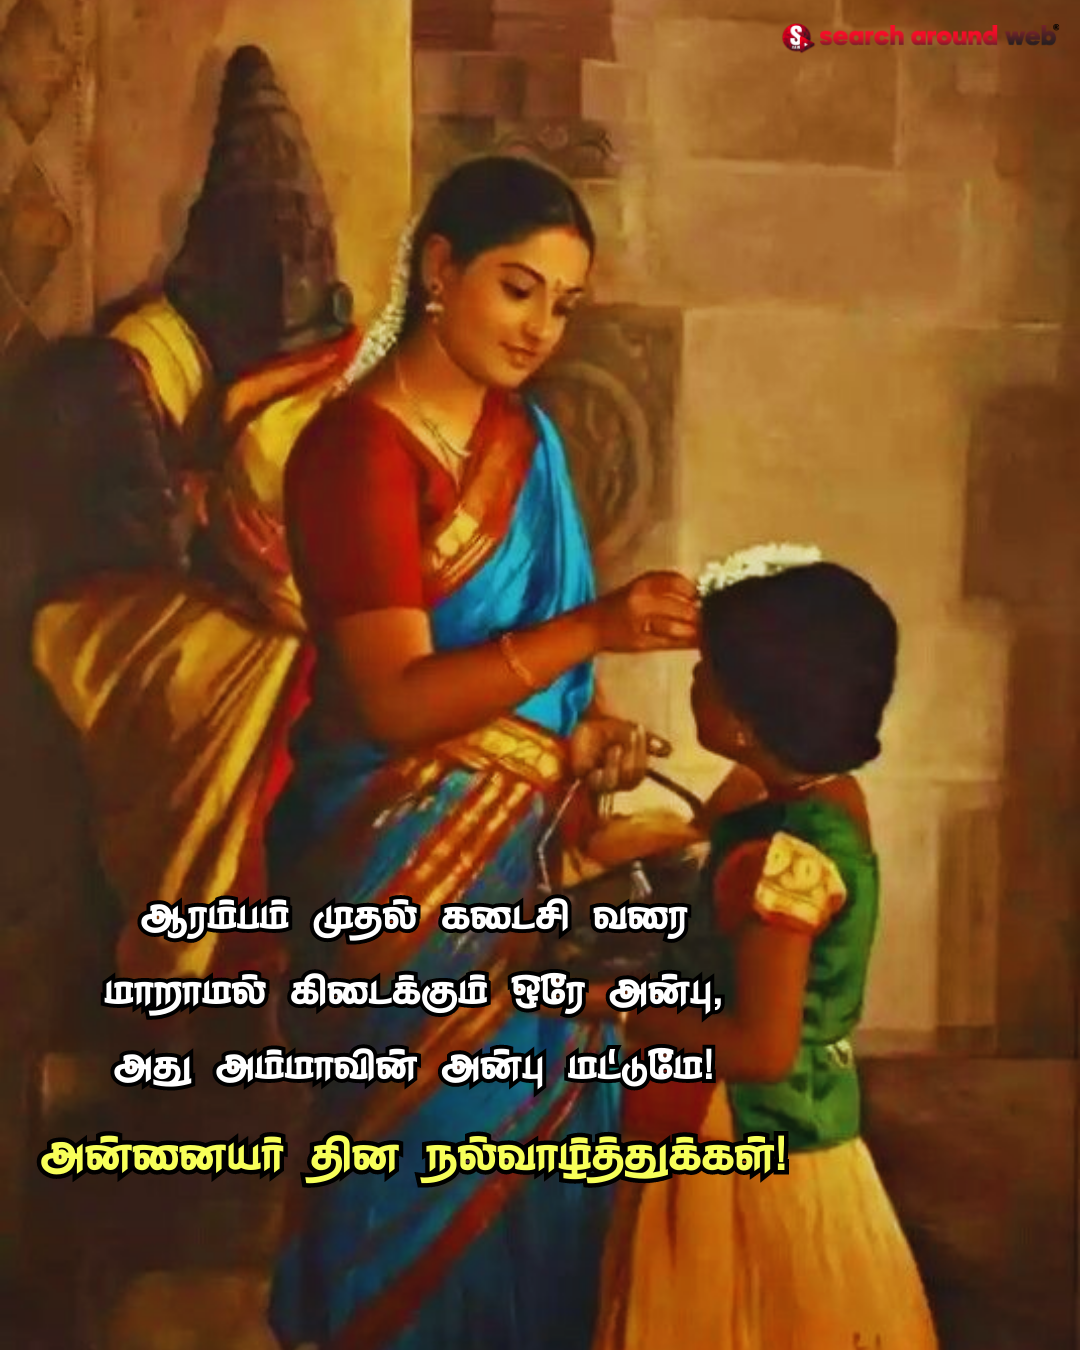 அன்னையர் தினம் ஸ்பெஷல்.. மனதை தொட்ட அம்மா கவிதை வரிகள்.. | Annaiyar Dhinam 2023 Kavithai in Tamil